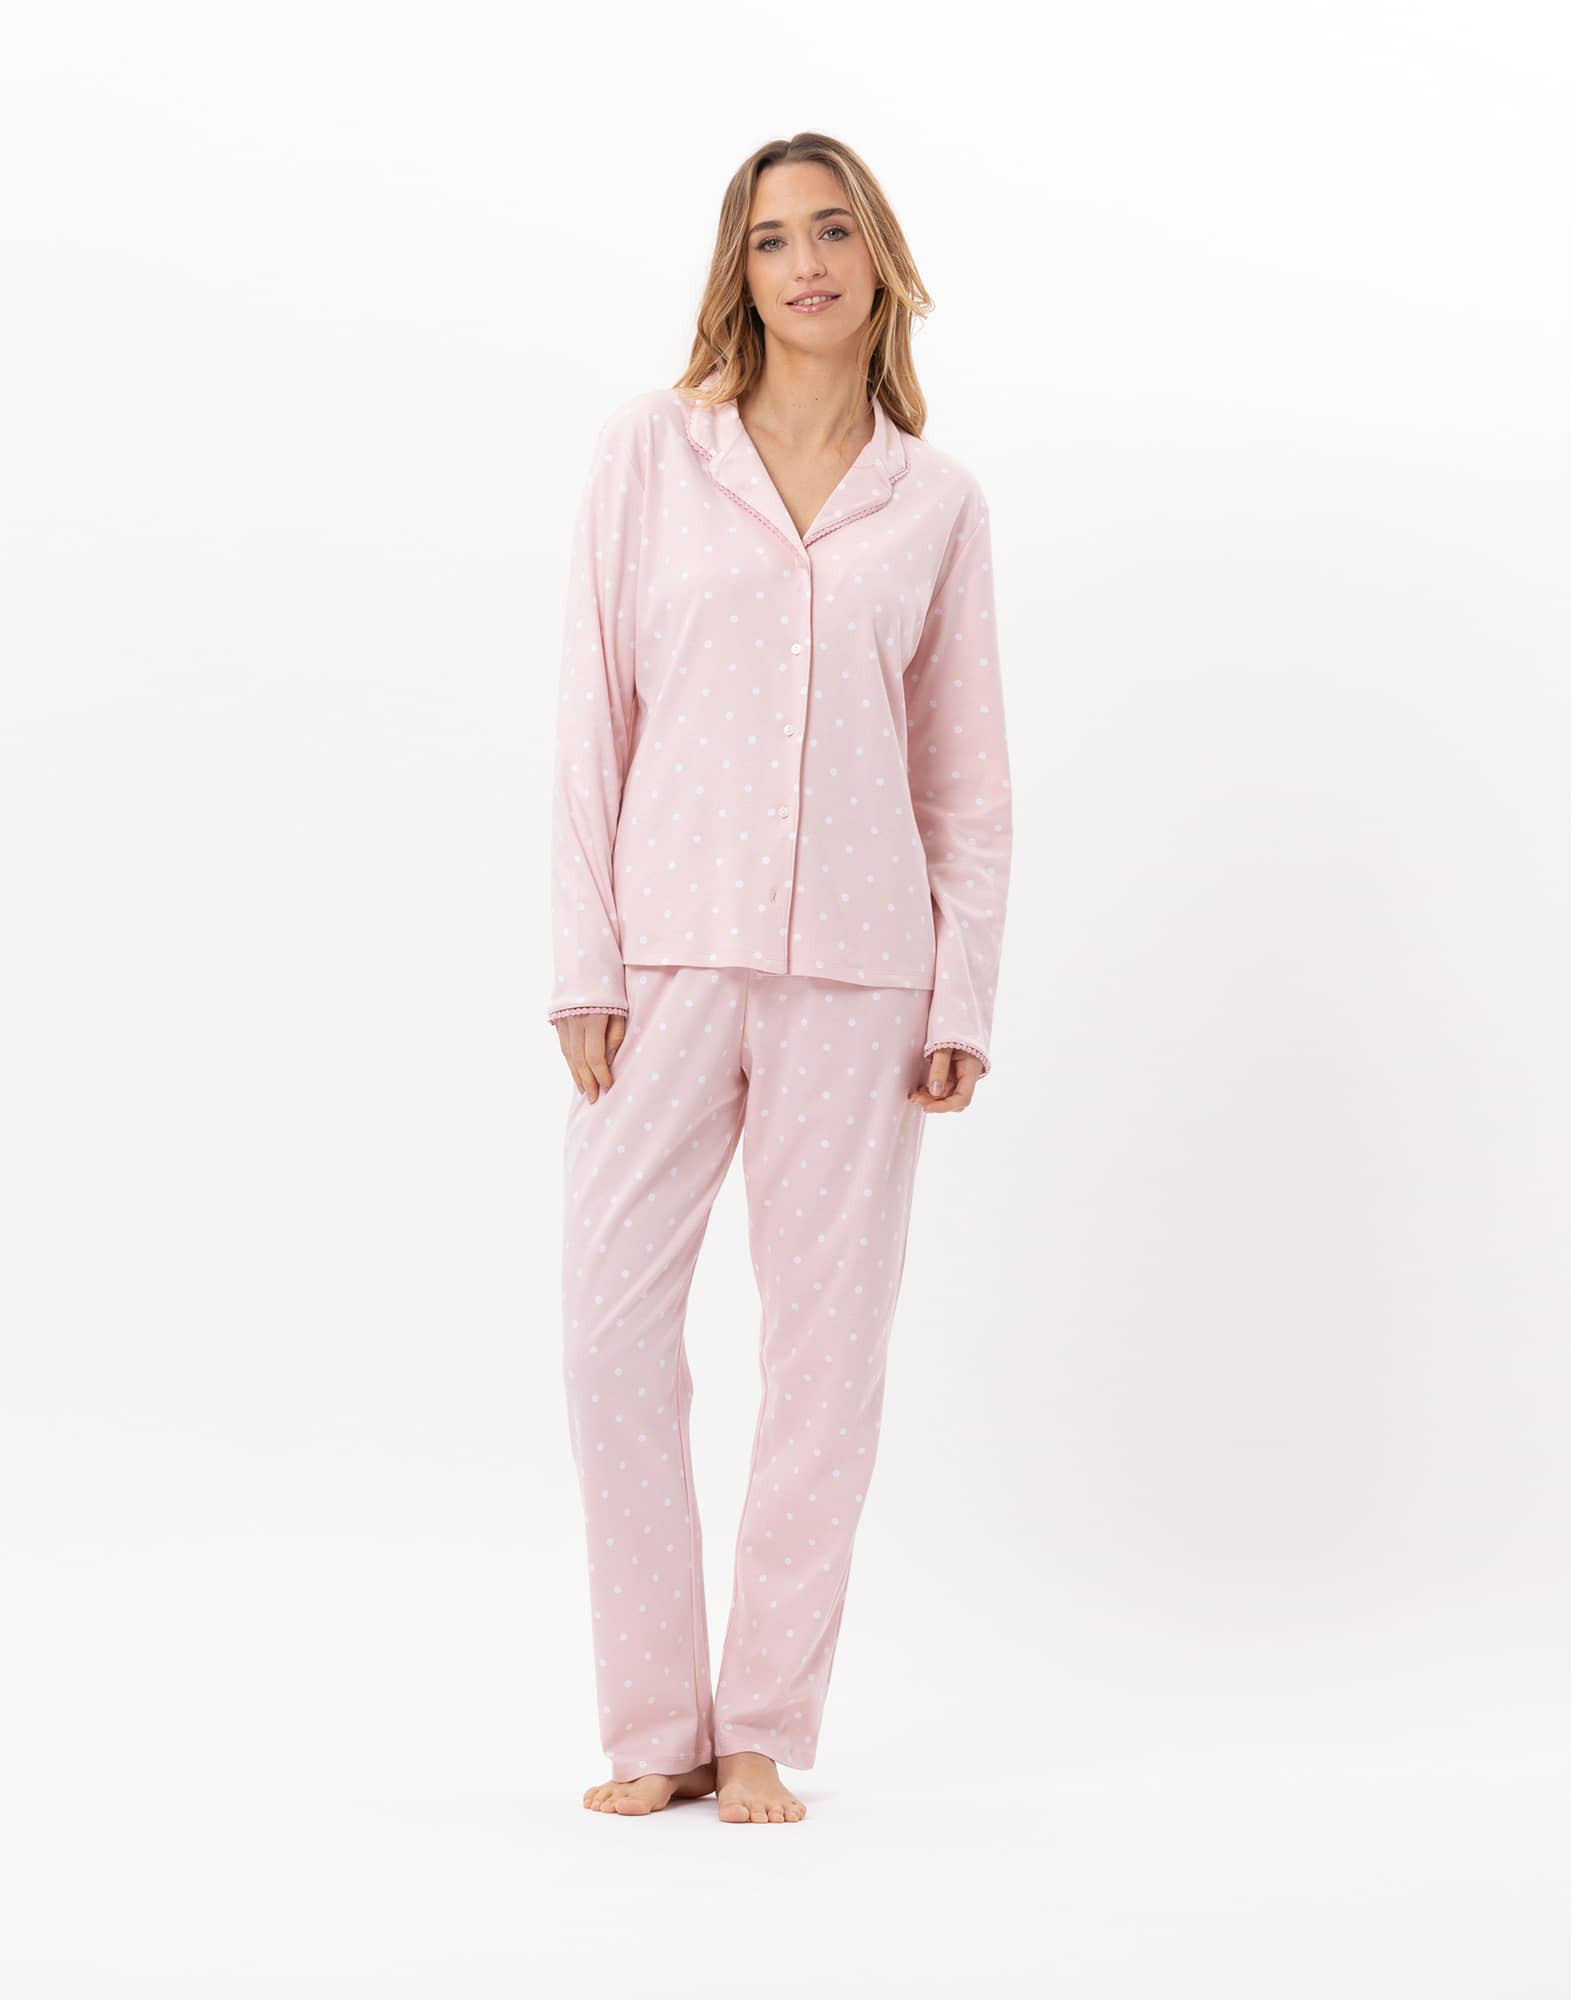 Cotton button-down pyjamas CHAMADE 806 Blush | Lingerie le Chat